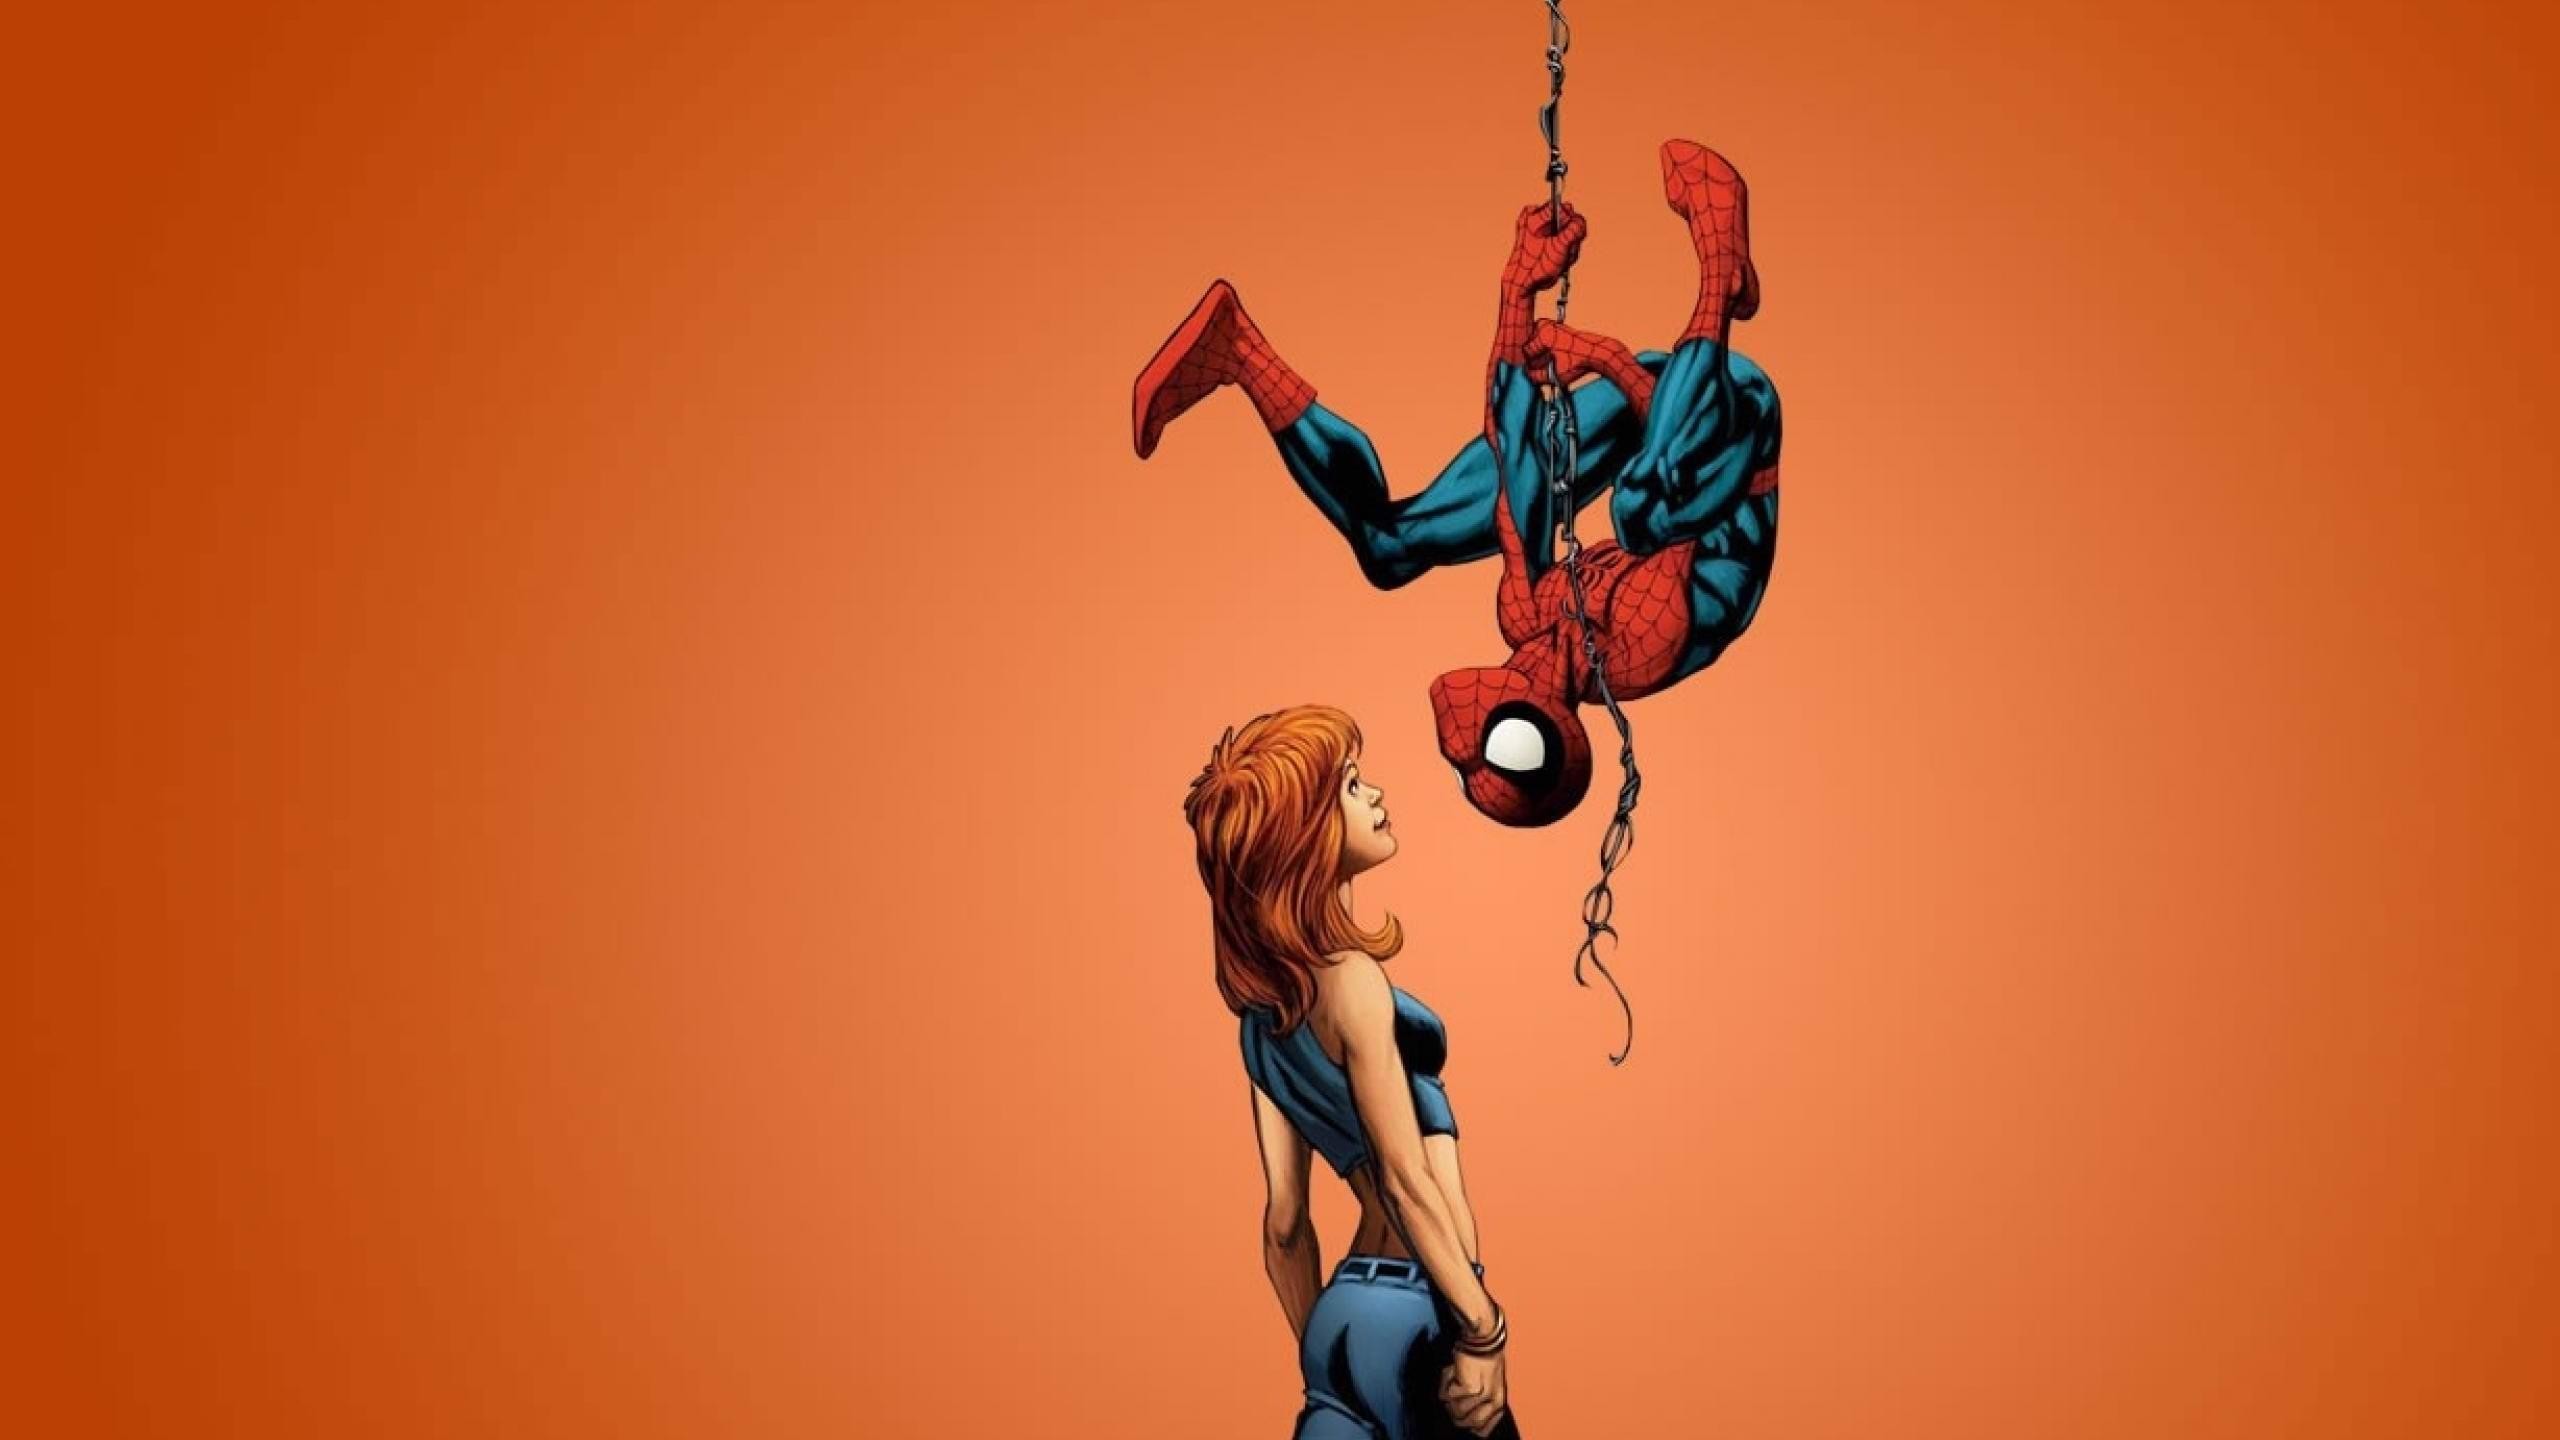 Spiderman Comics , HD Wallpaper & Backgrounds